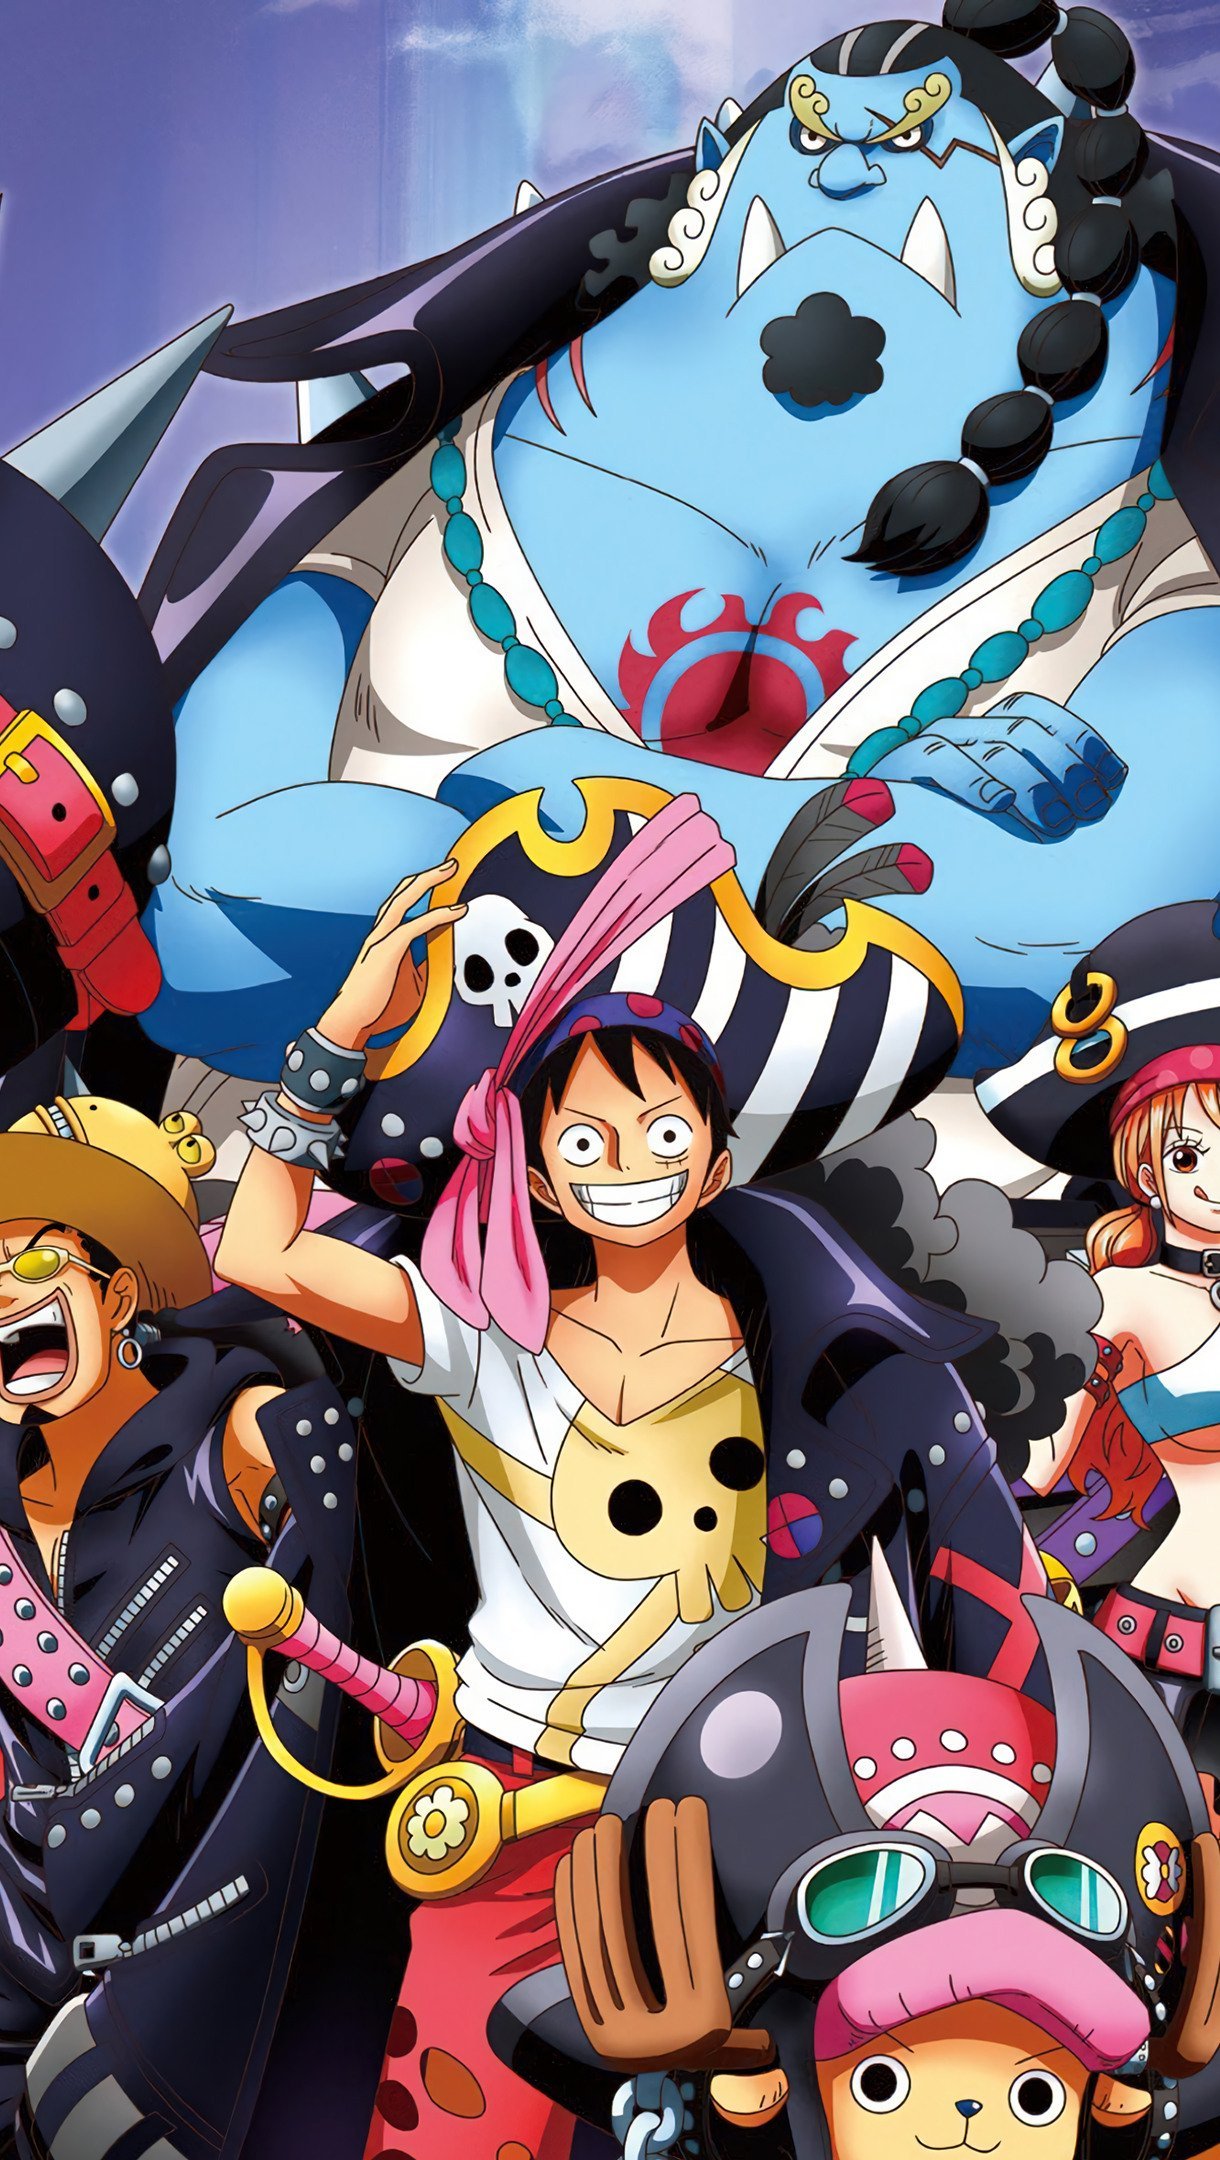 Fondos de pantalla Personajes de One Piece Vertical